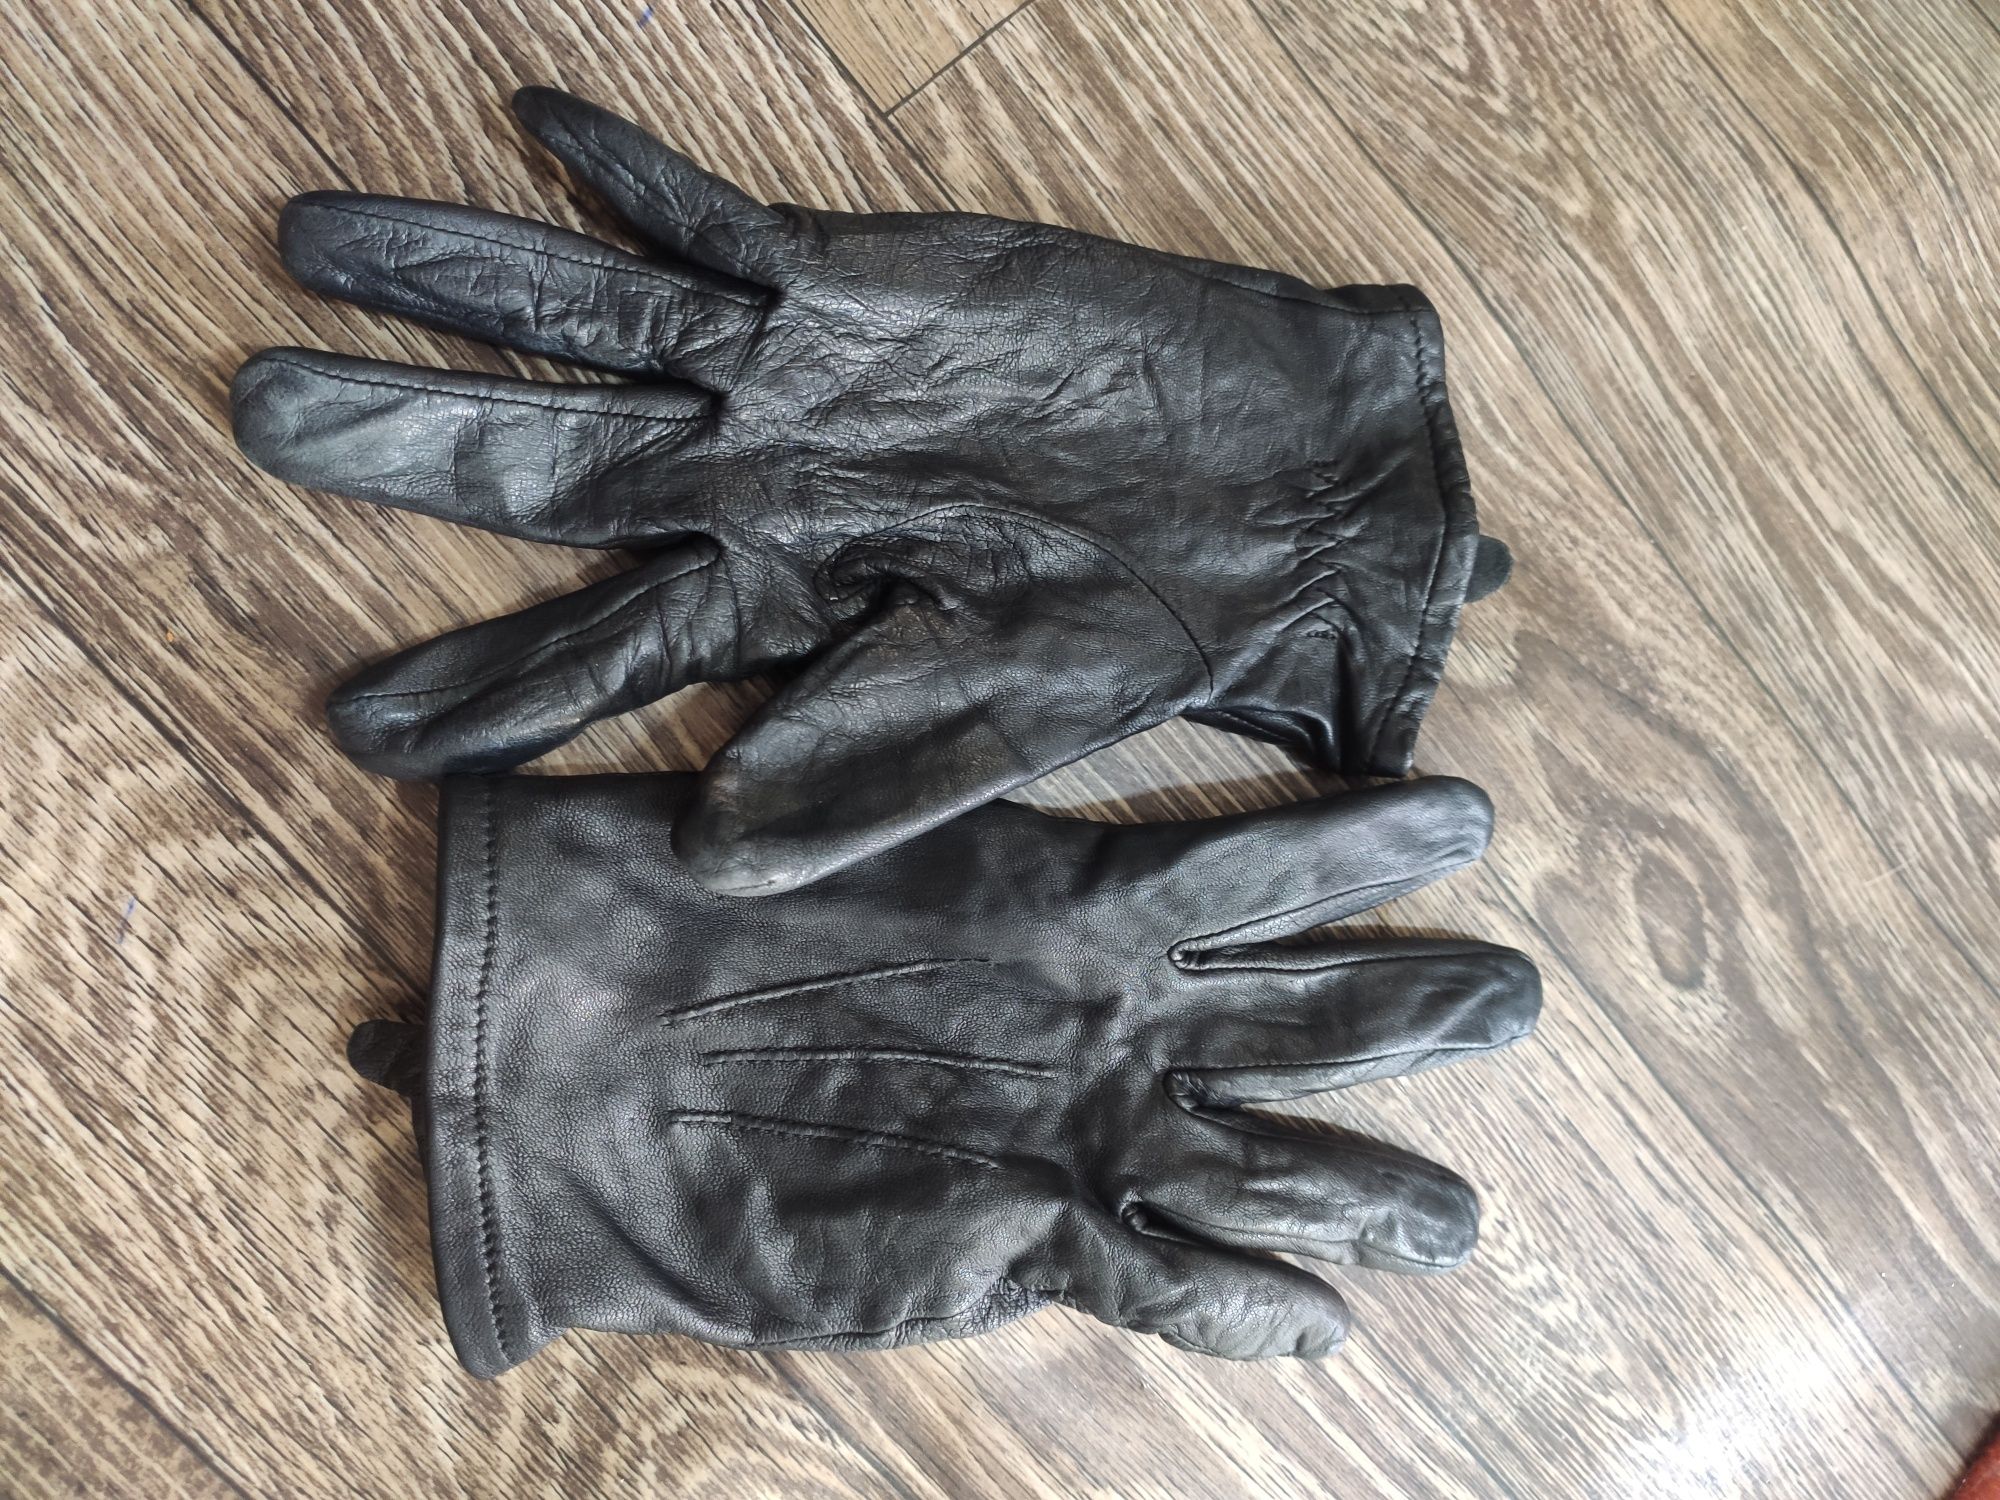 Кожаные перчатки теплые,  4 пары